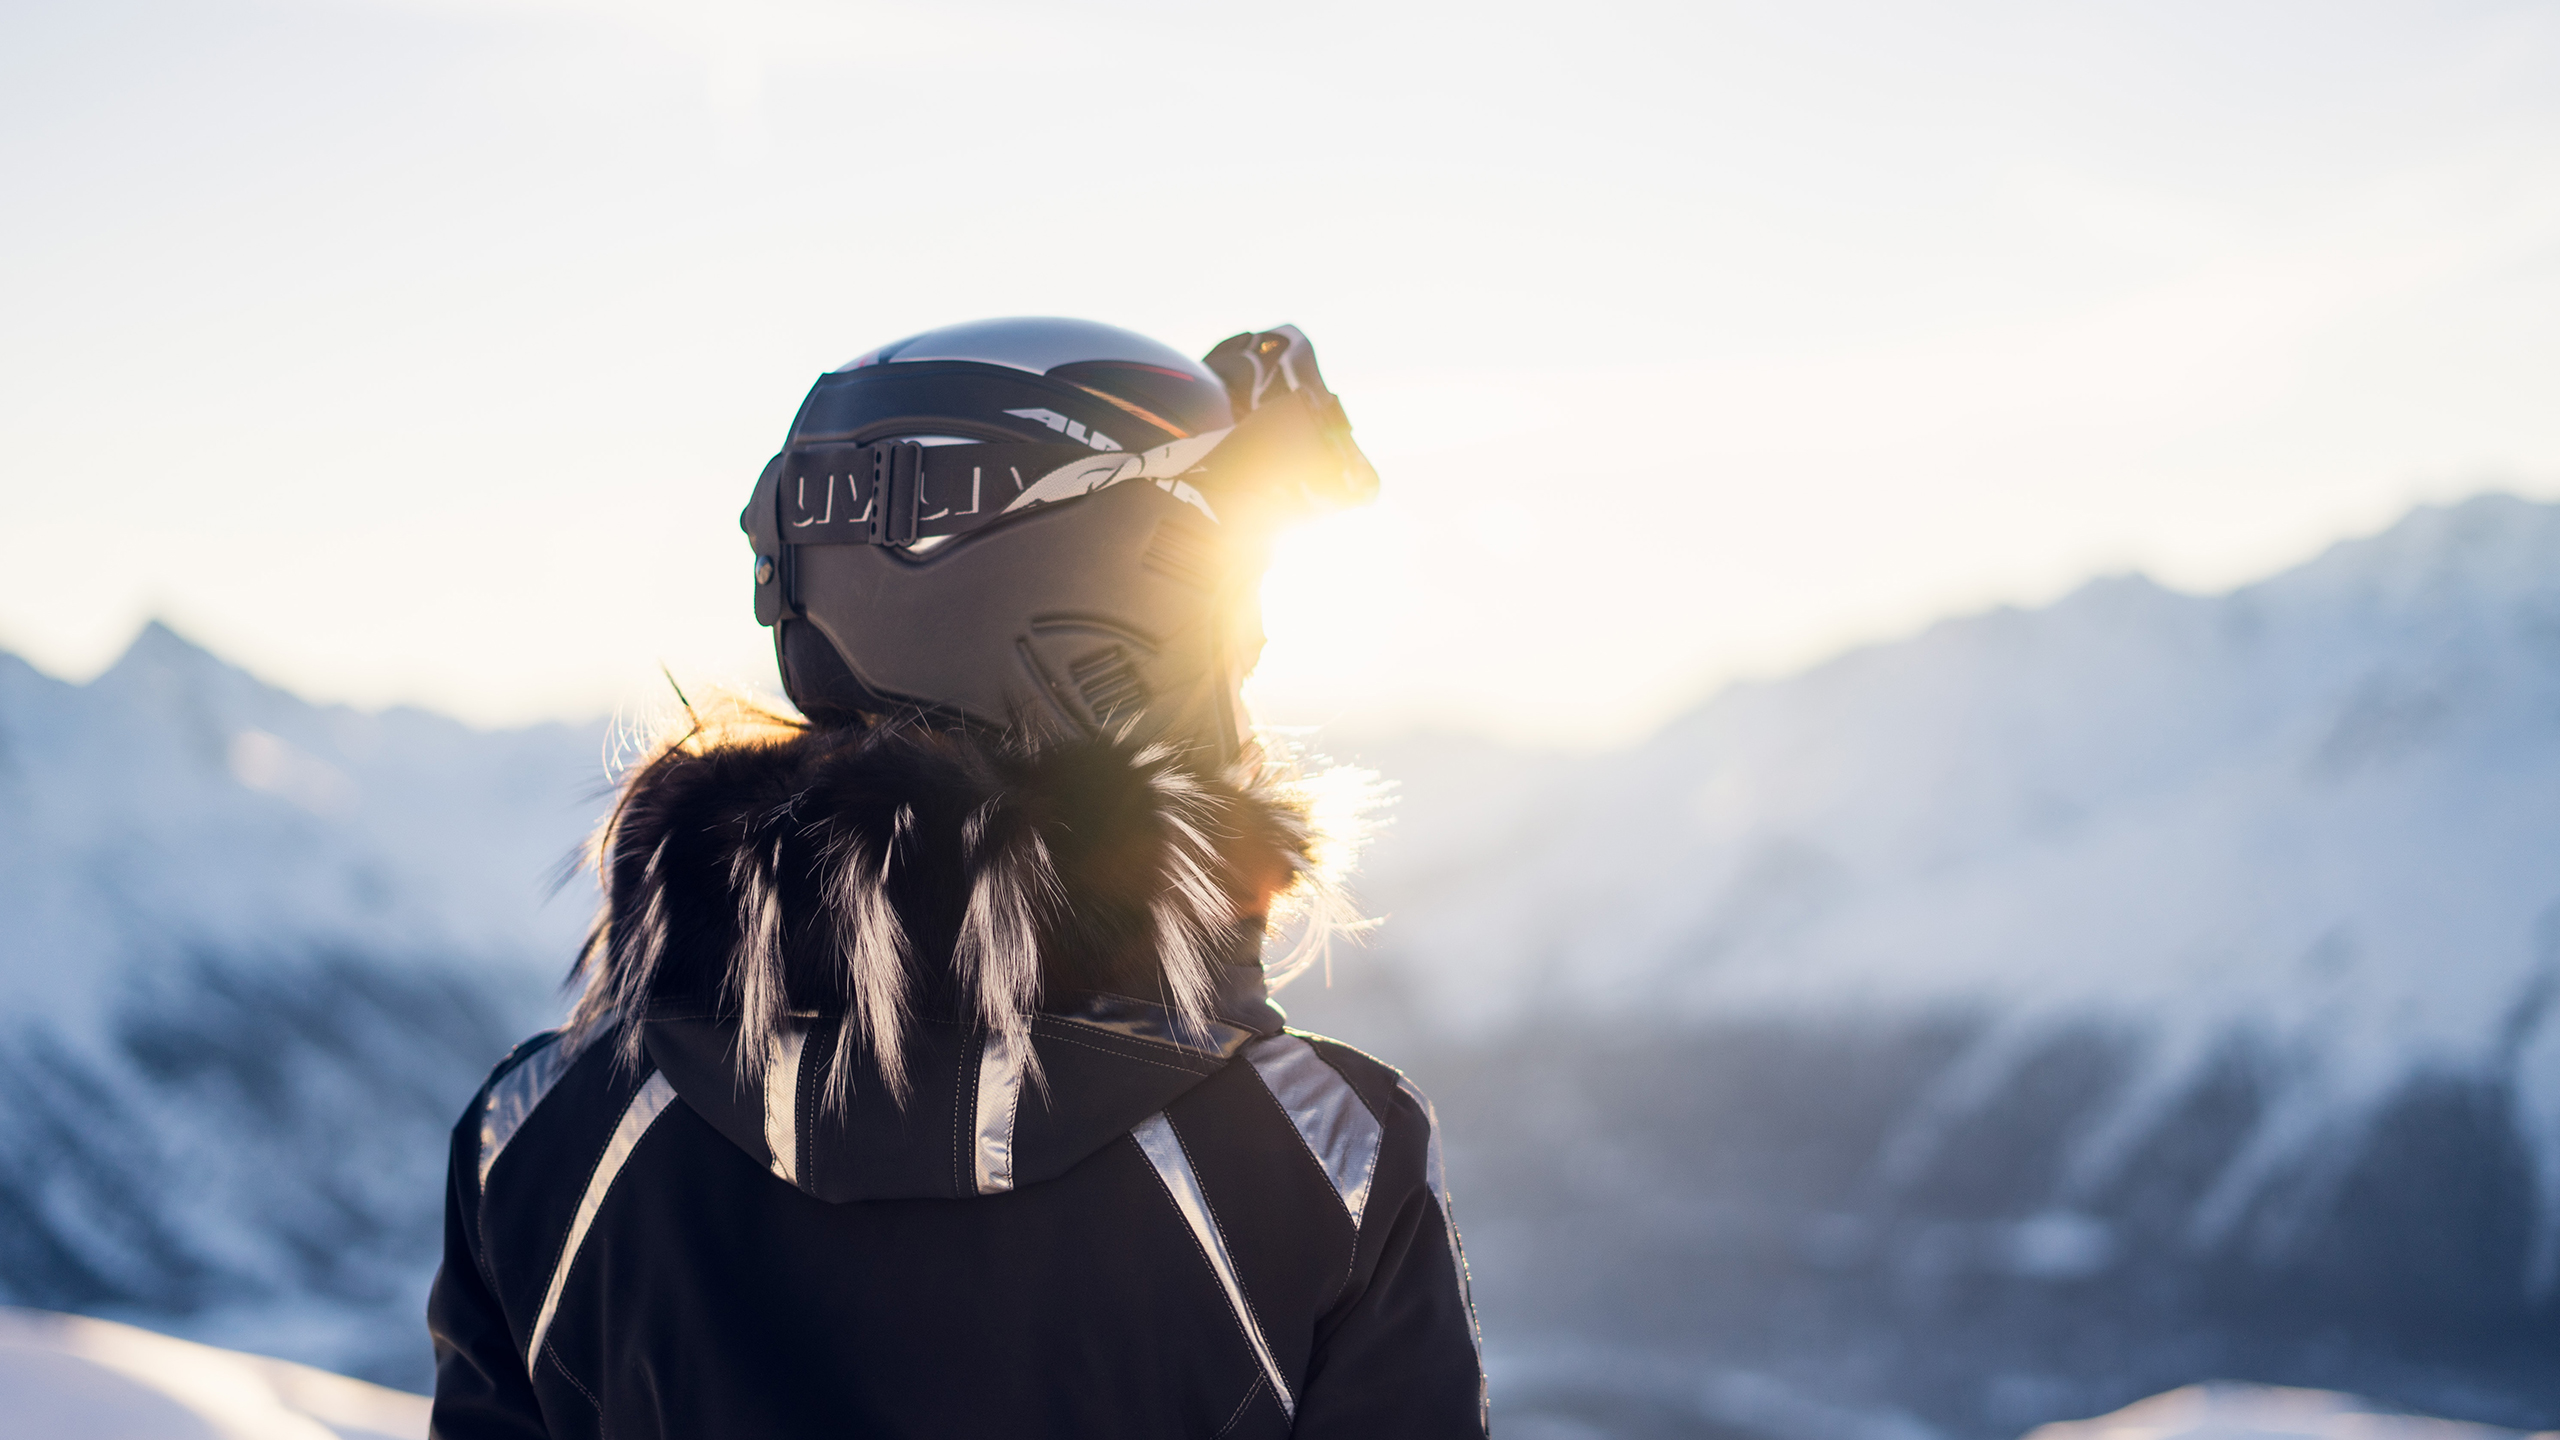 Une femme de dos est en train de regarder l'horizon sur une piste de ski. Elle est équipée d'un casque et de lunettes de ski